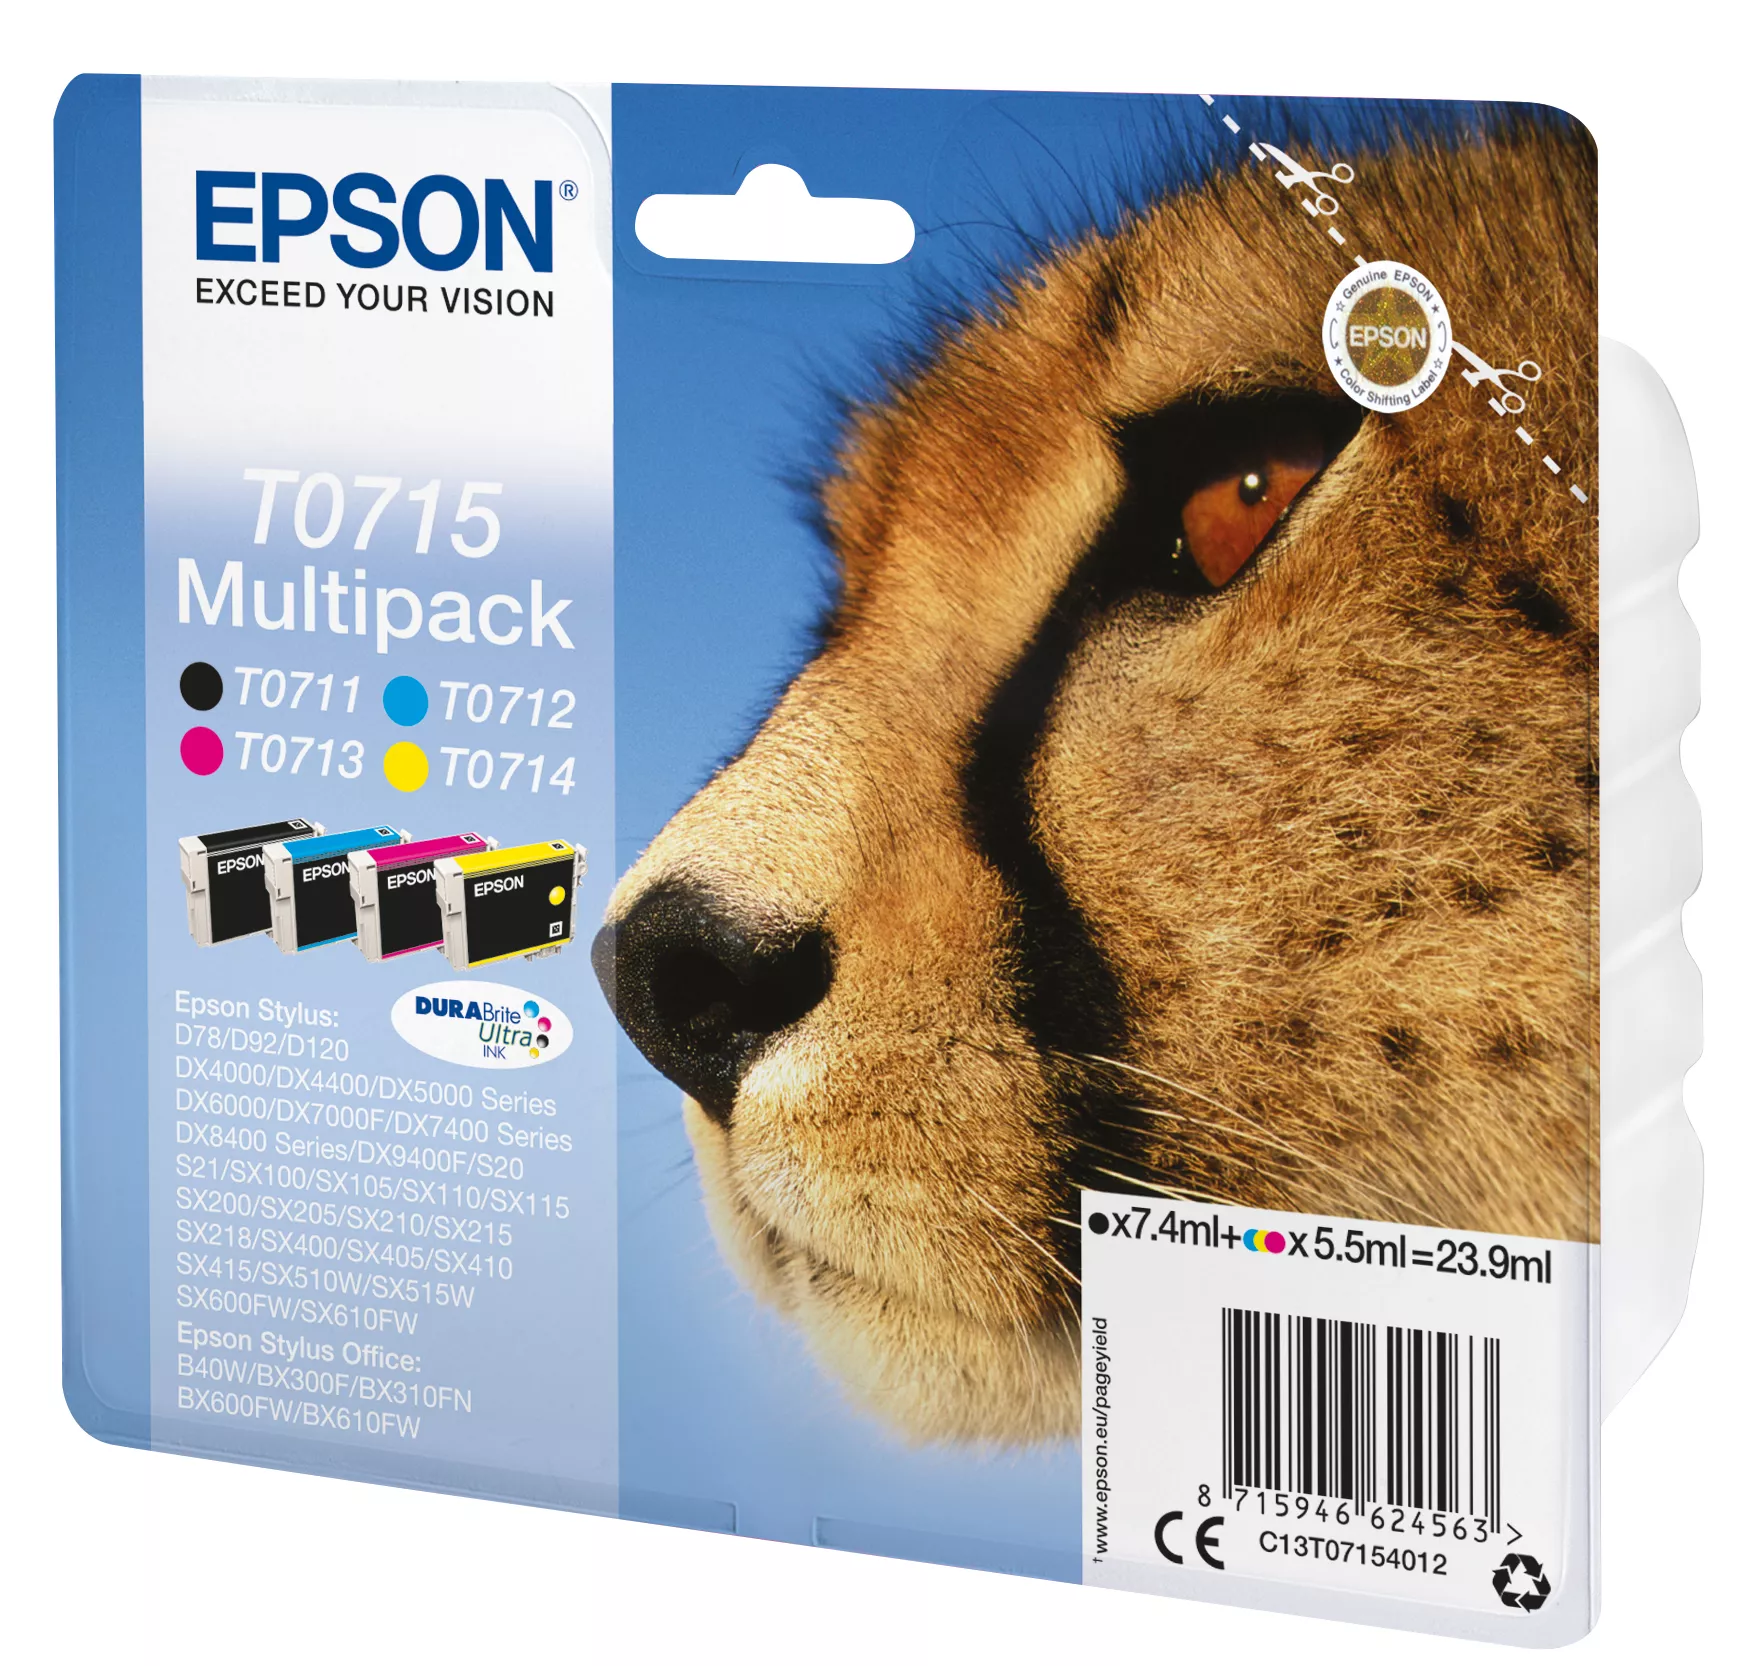 Vente EPSON DURABRITE Ultra cartouche d encre noir et Epson au meilleur prix - visuel 2